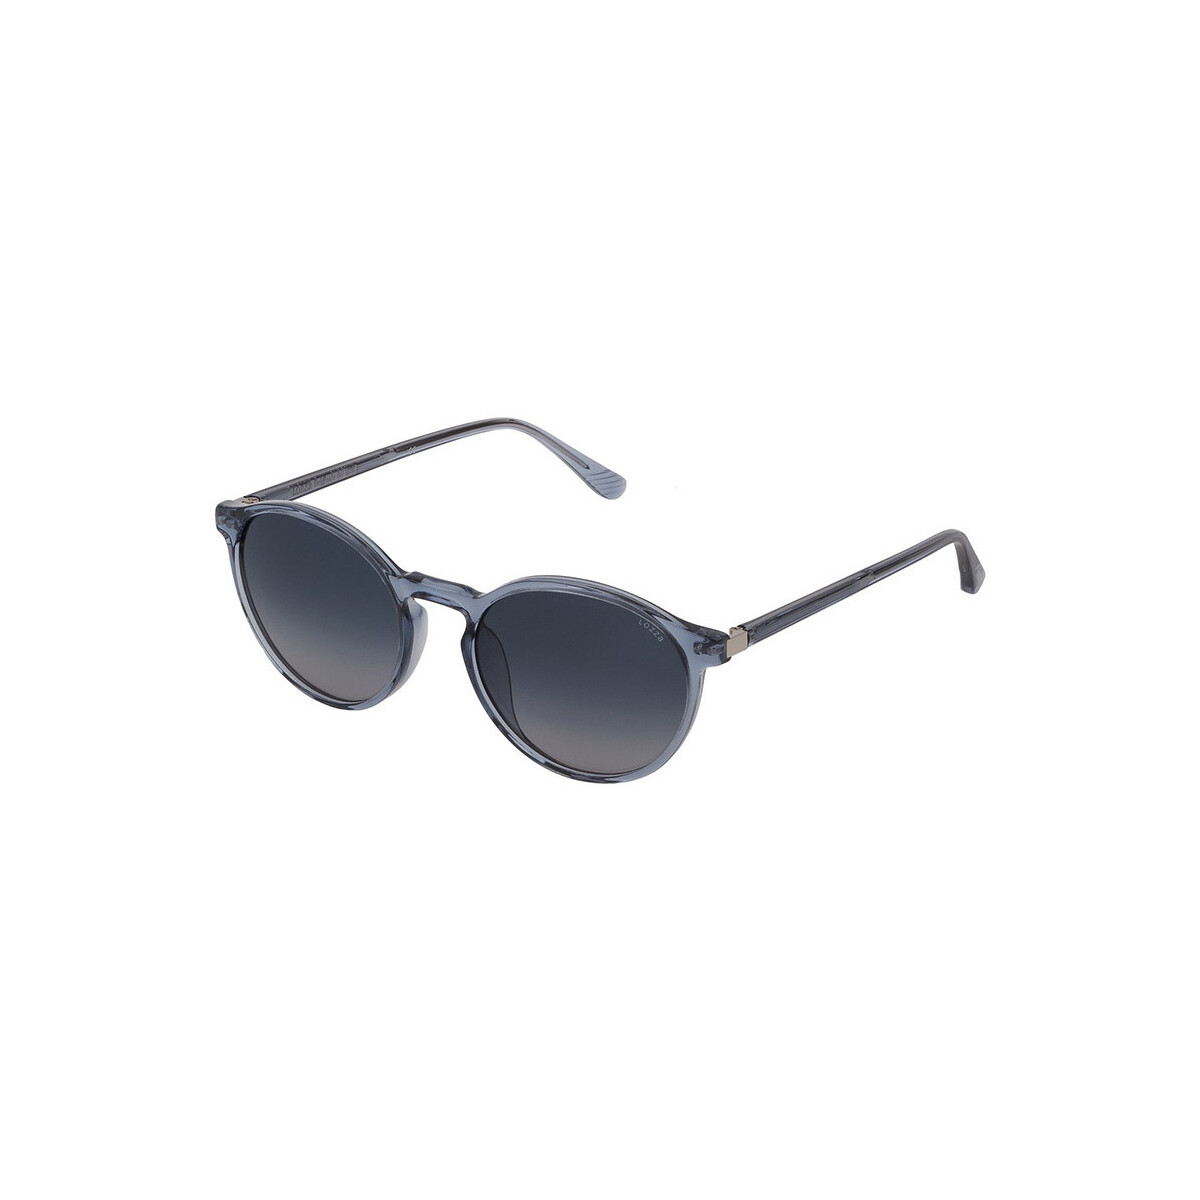 Orologi & Gioielli Occhiali da sole Lozza SL4226 - FERRARA 4 Occhiali da sole, Blu/Blu, 53 mm Blu